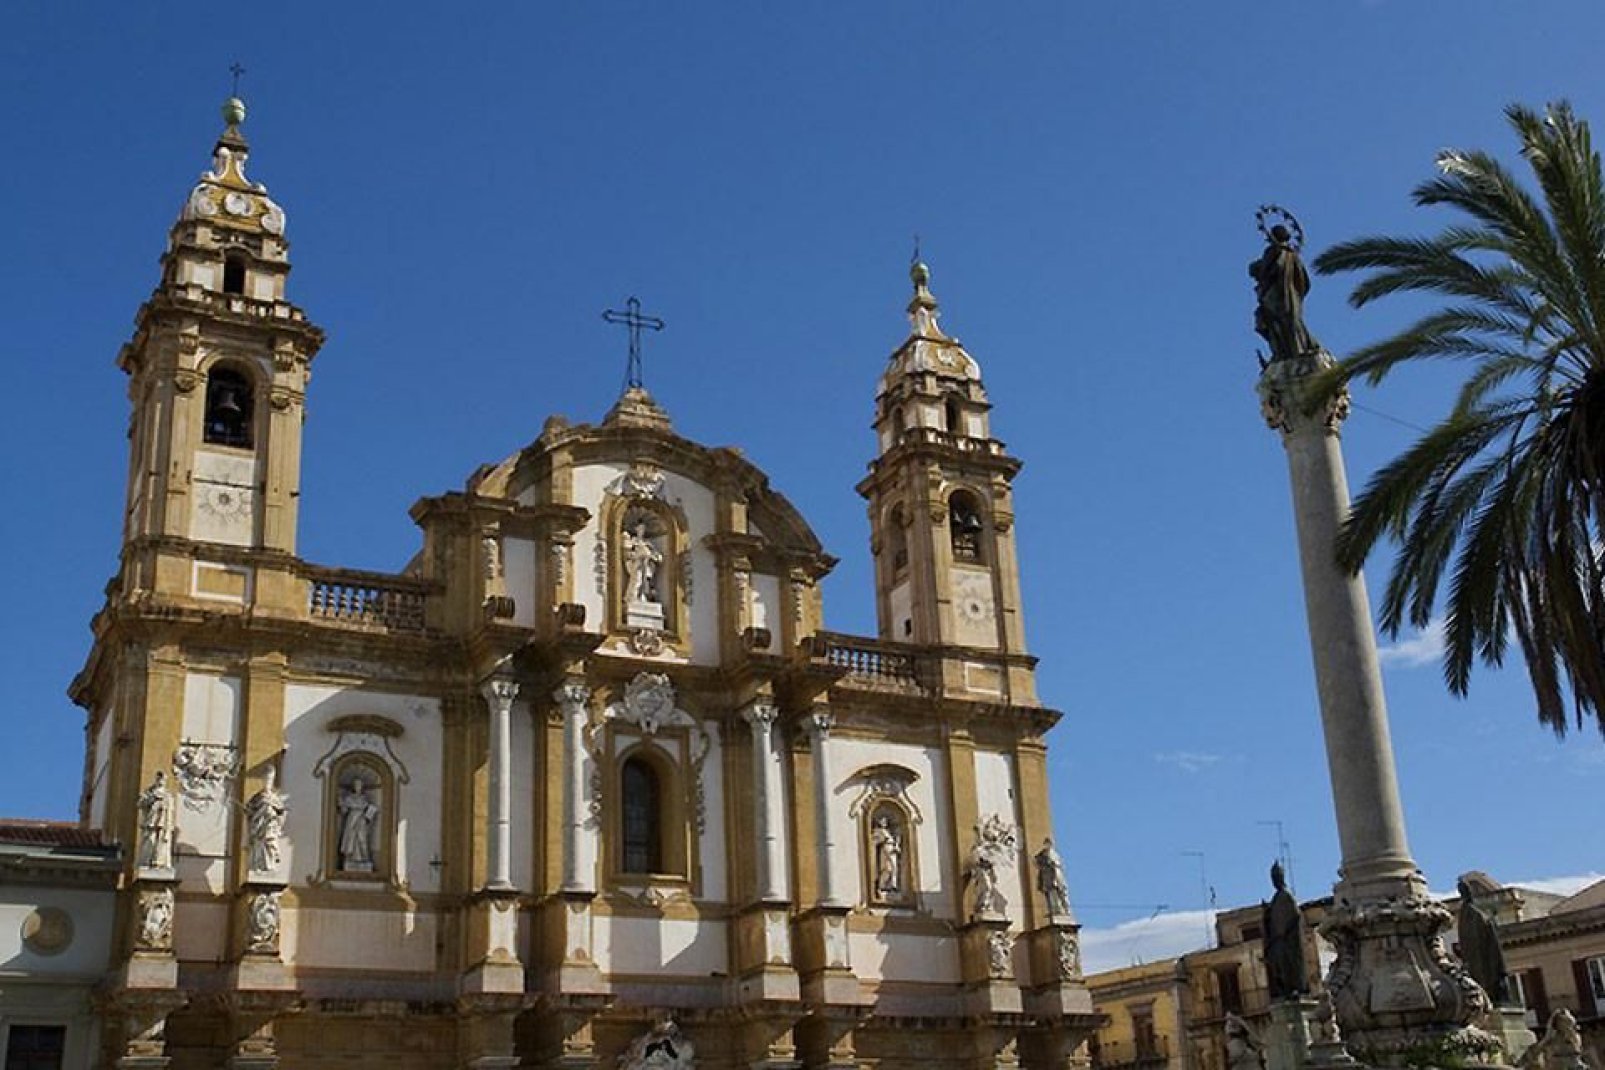 La iglesia San Domenico, situada en la plaza del mismo nombre en el barrio de La Loggia, es el segundo lugar de culto más importante de Palermo después de la catedral.